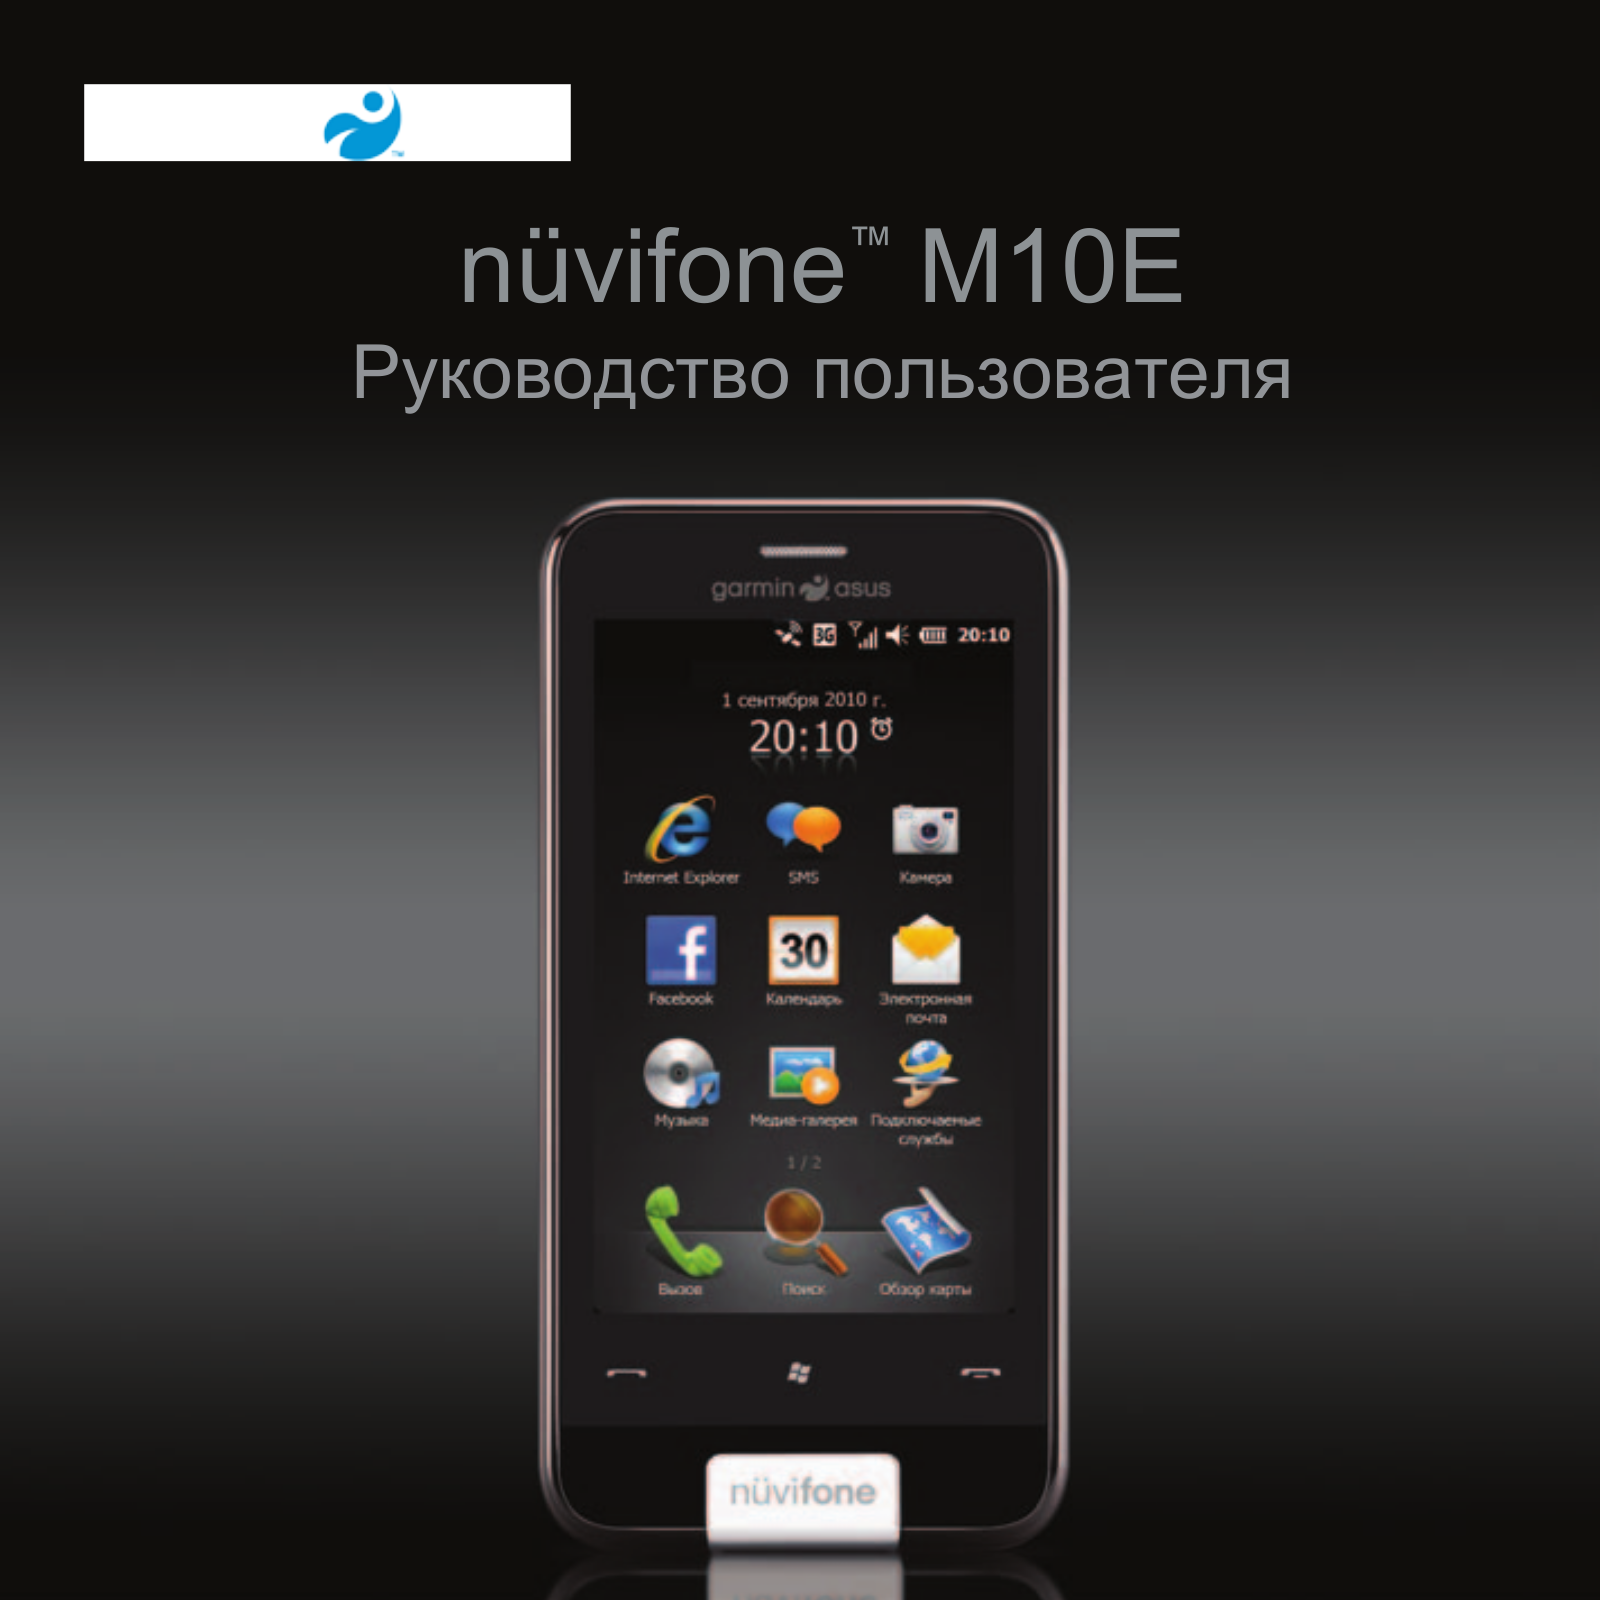 Asus Nuvifone M10E User Manual